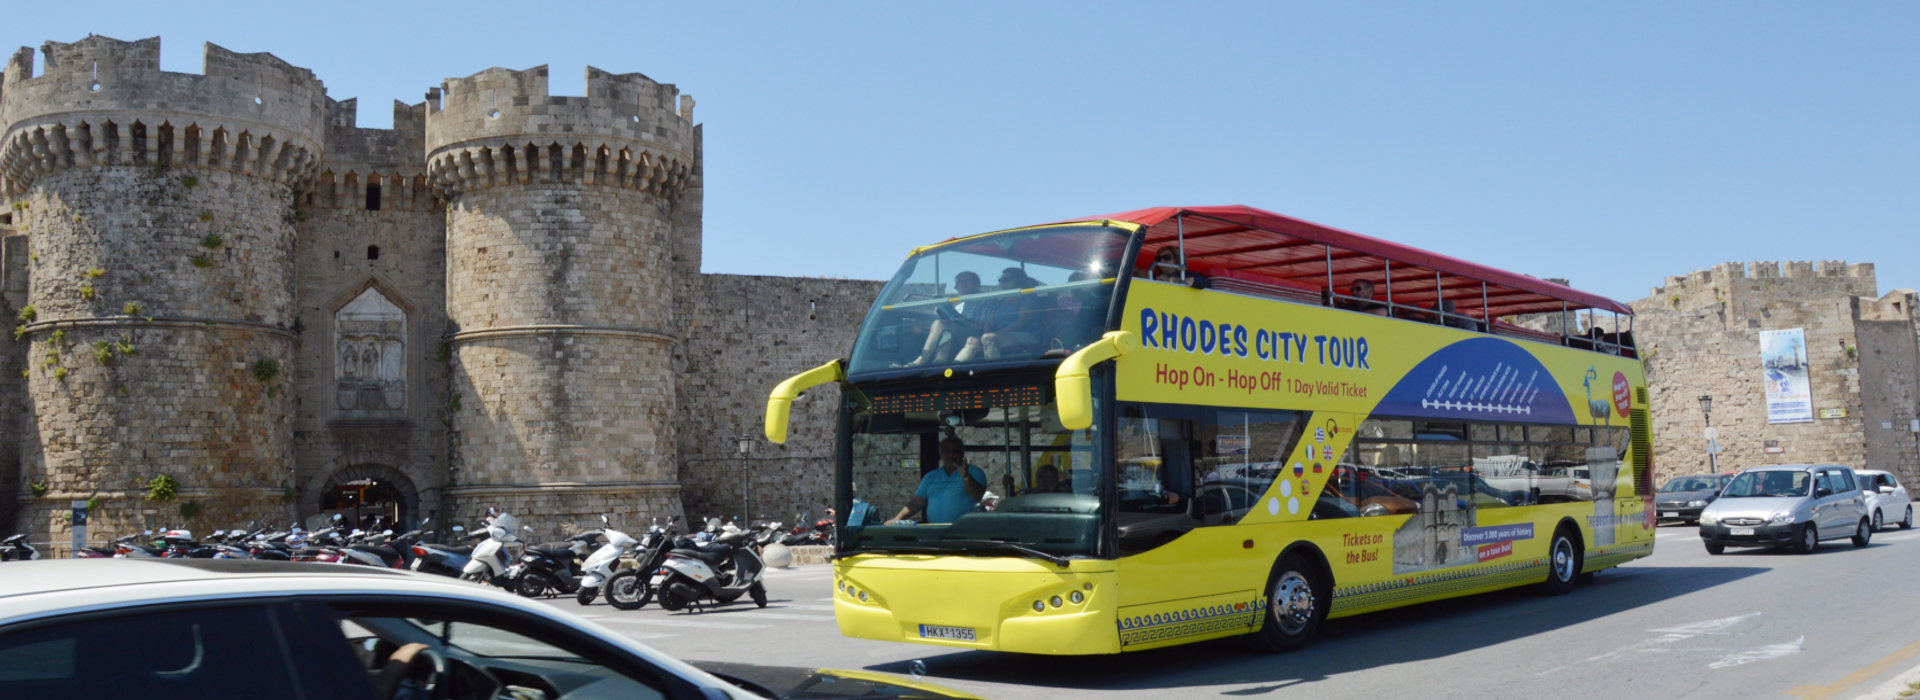 Autentyczna wycieczka po mieście Rodos | Captains Tours